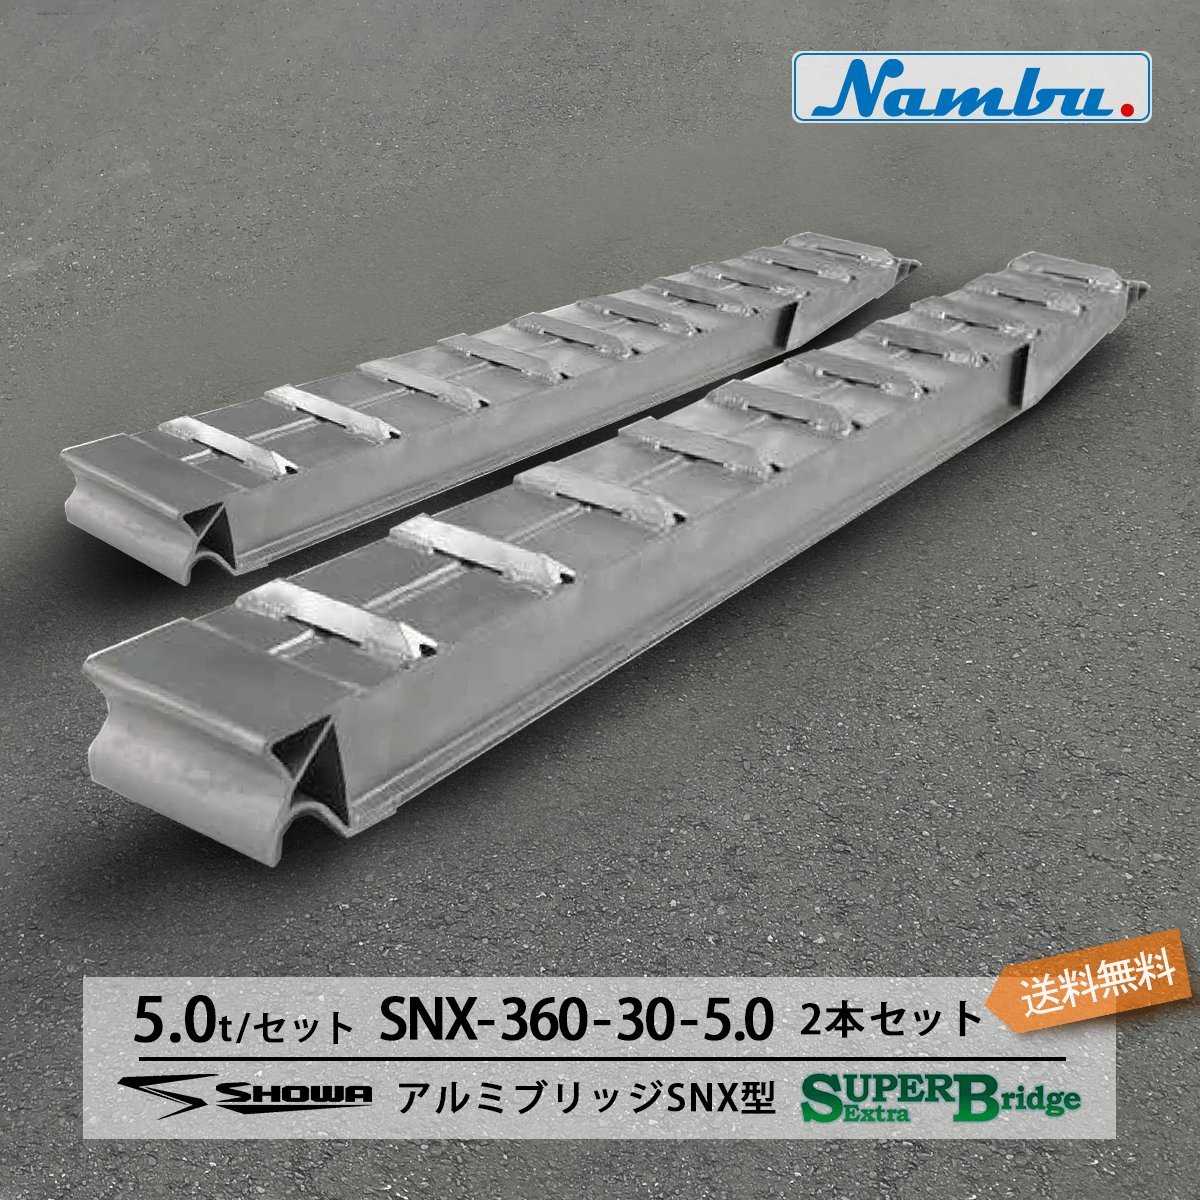 昭和アルミブリッジ SXN-360-30-5.0 5.0t(5t) ツメ式 全長3600/有効幅300(mm) 2本 組